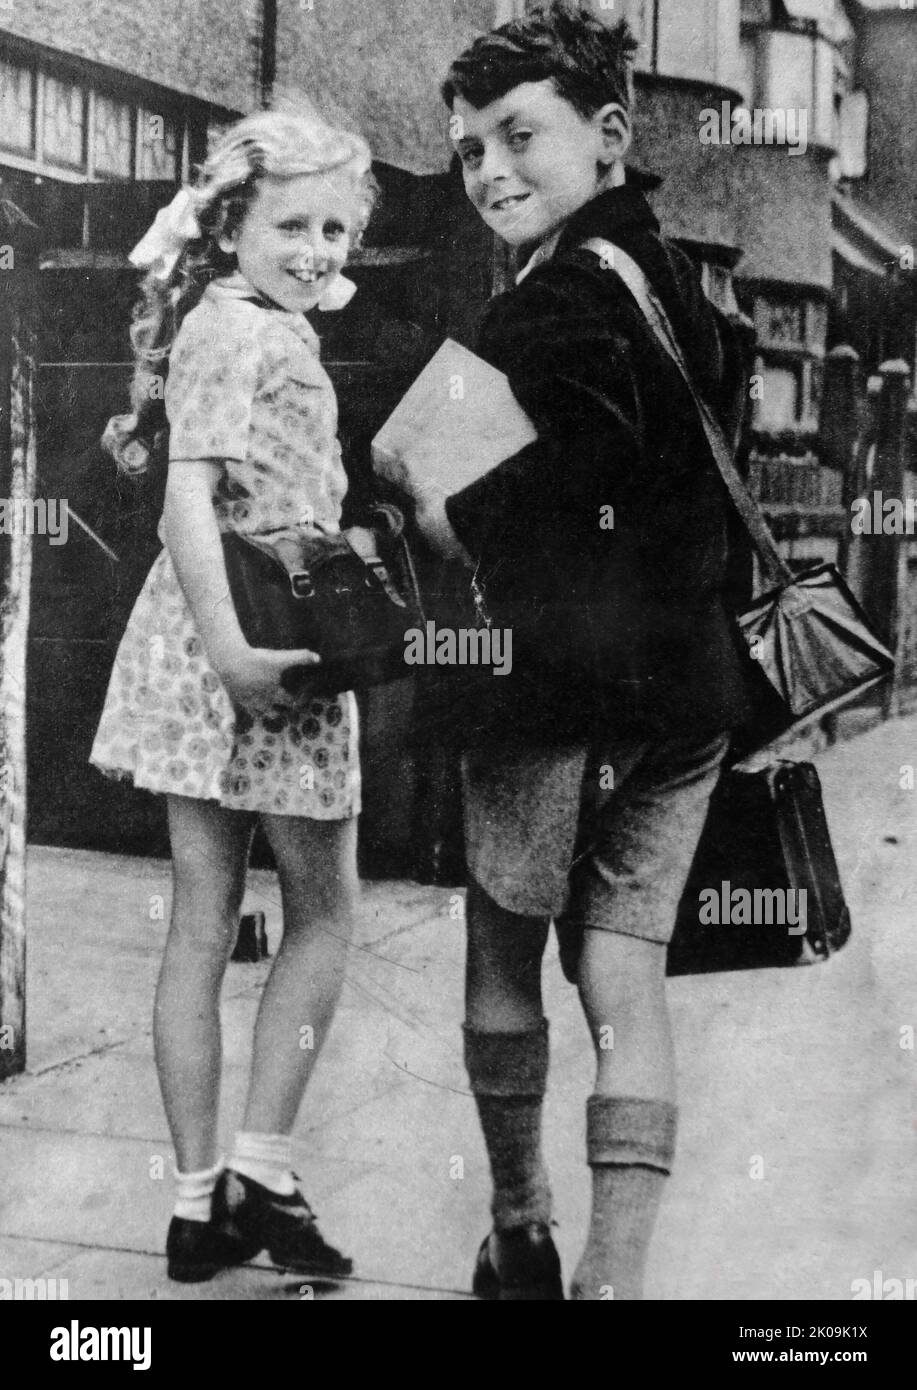 Bruder und Schwester gehen während des Zweiten Weltkriegs zur Schule, London, England, 1940. Stockfoto